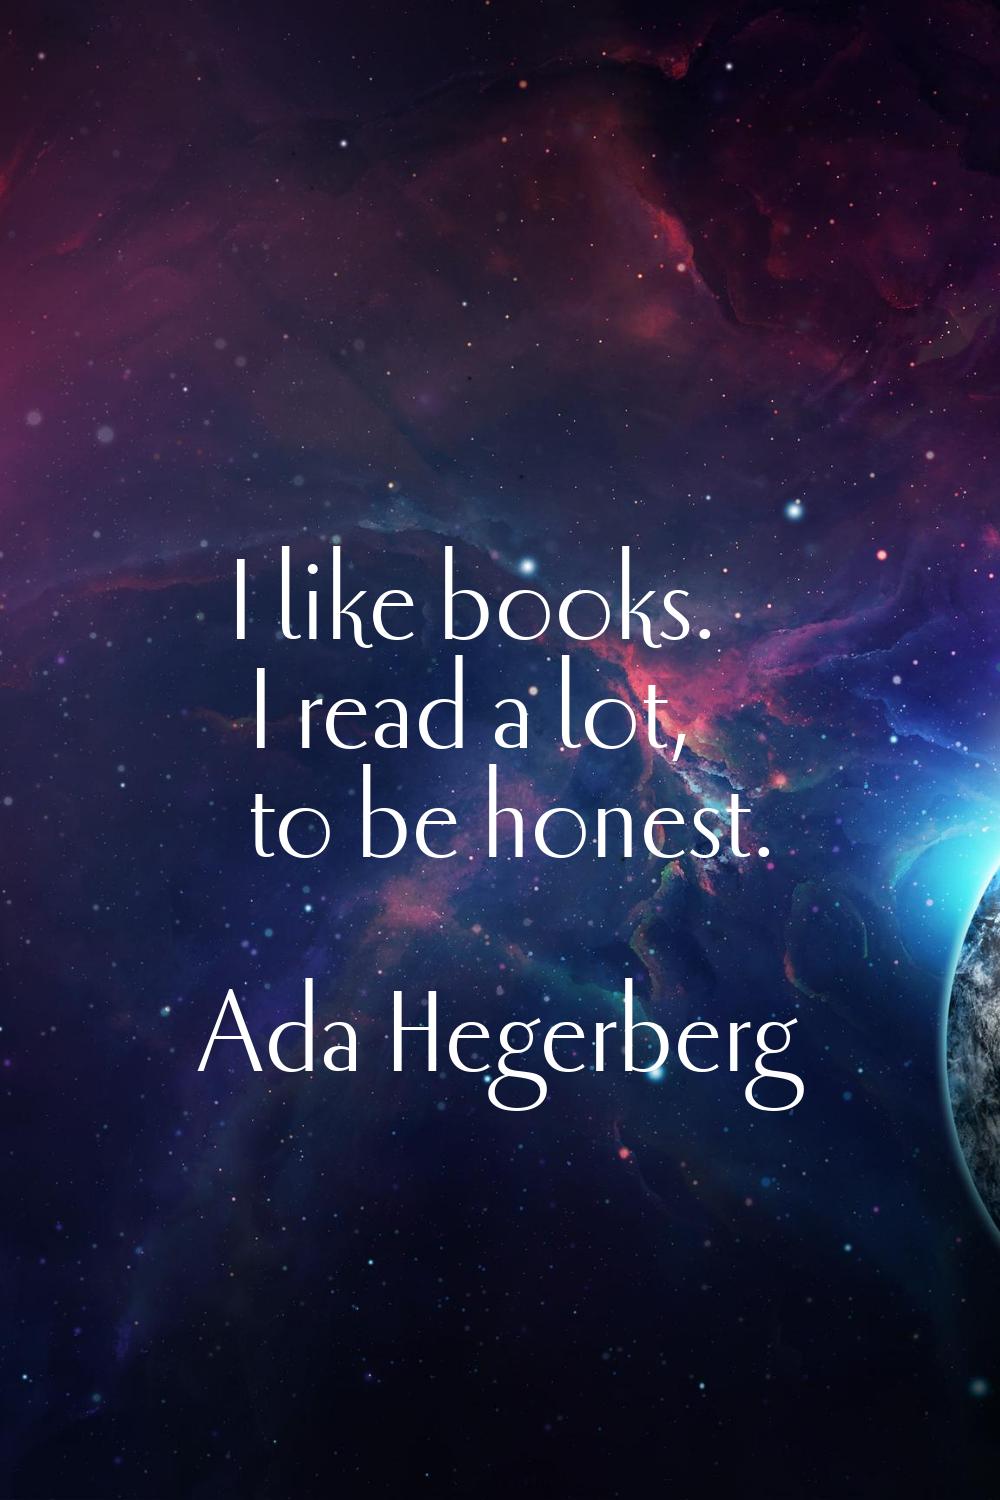 I like books. I read a lot, to be honest.